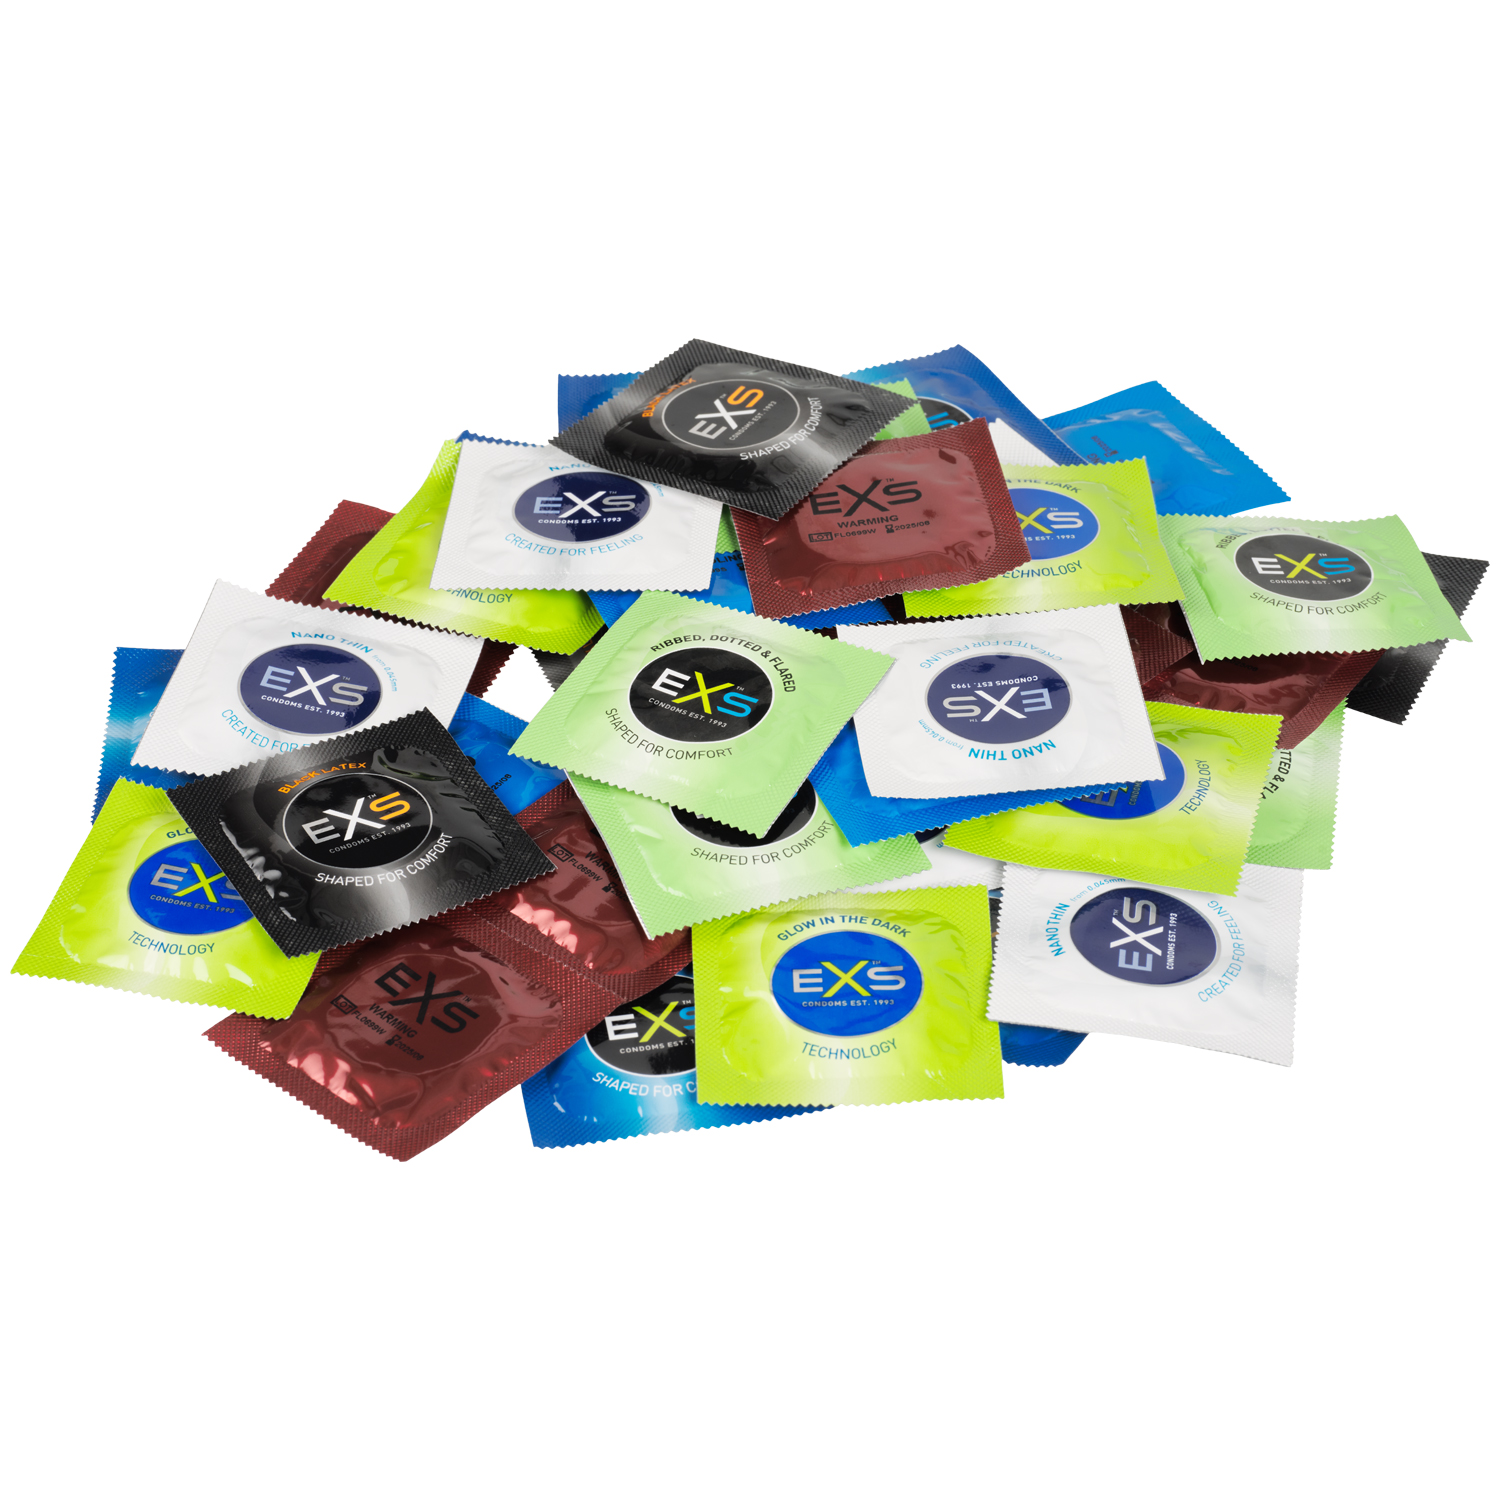 EXS Blandade kondomer 42 st   - Klar